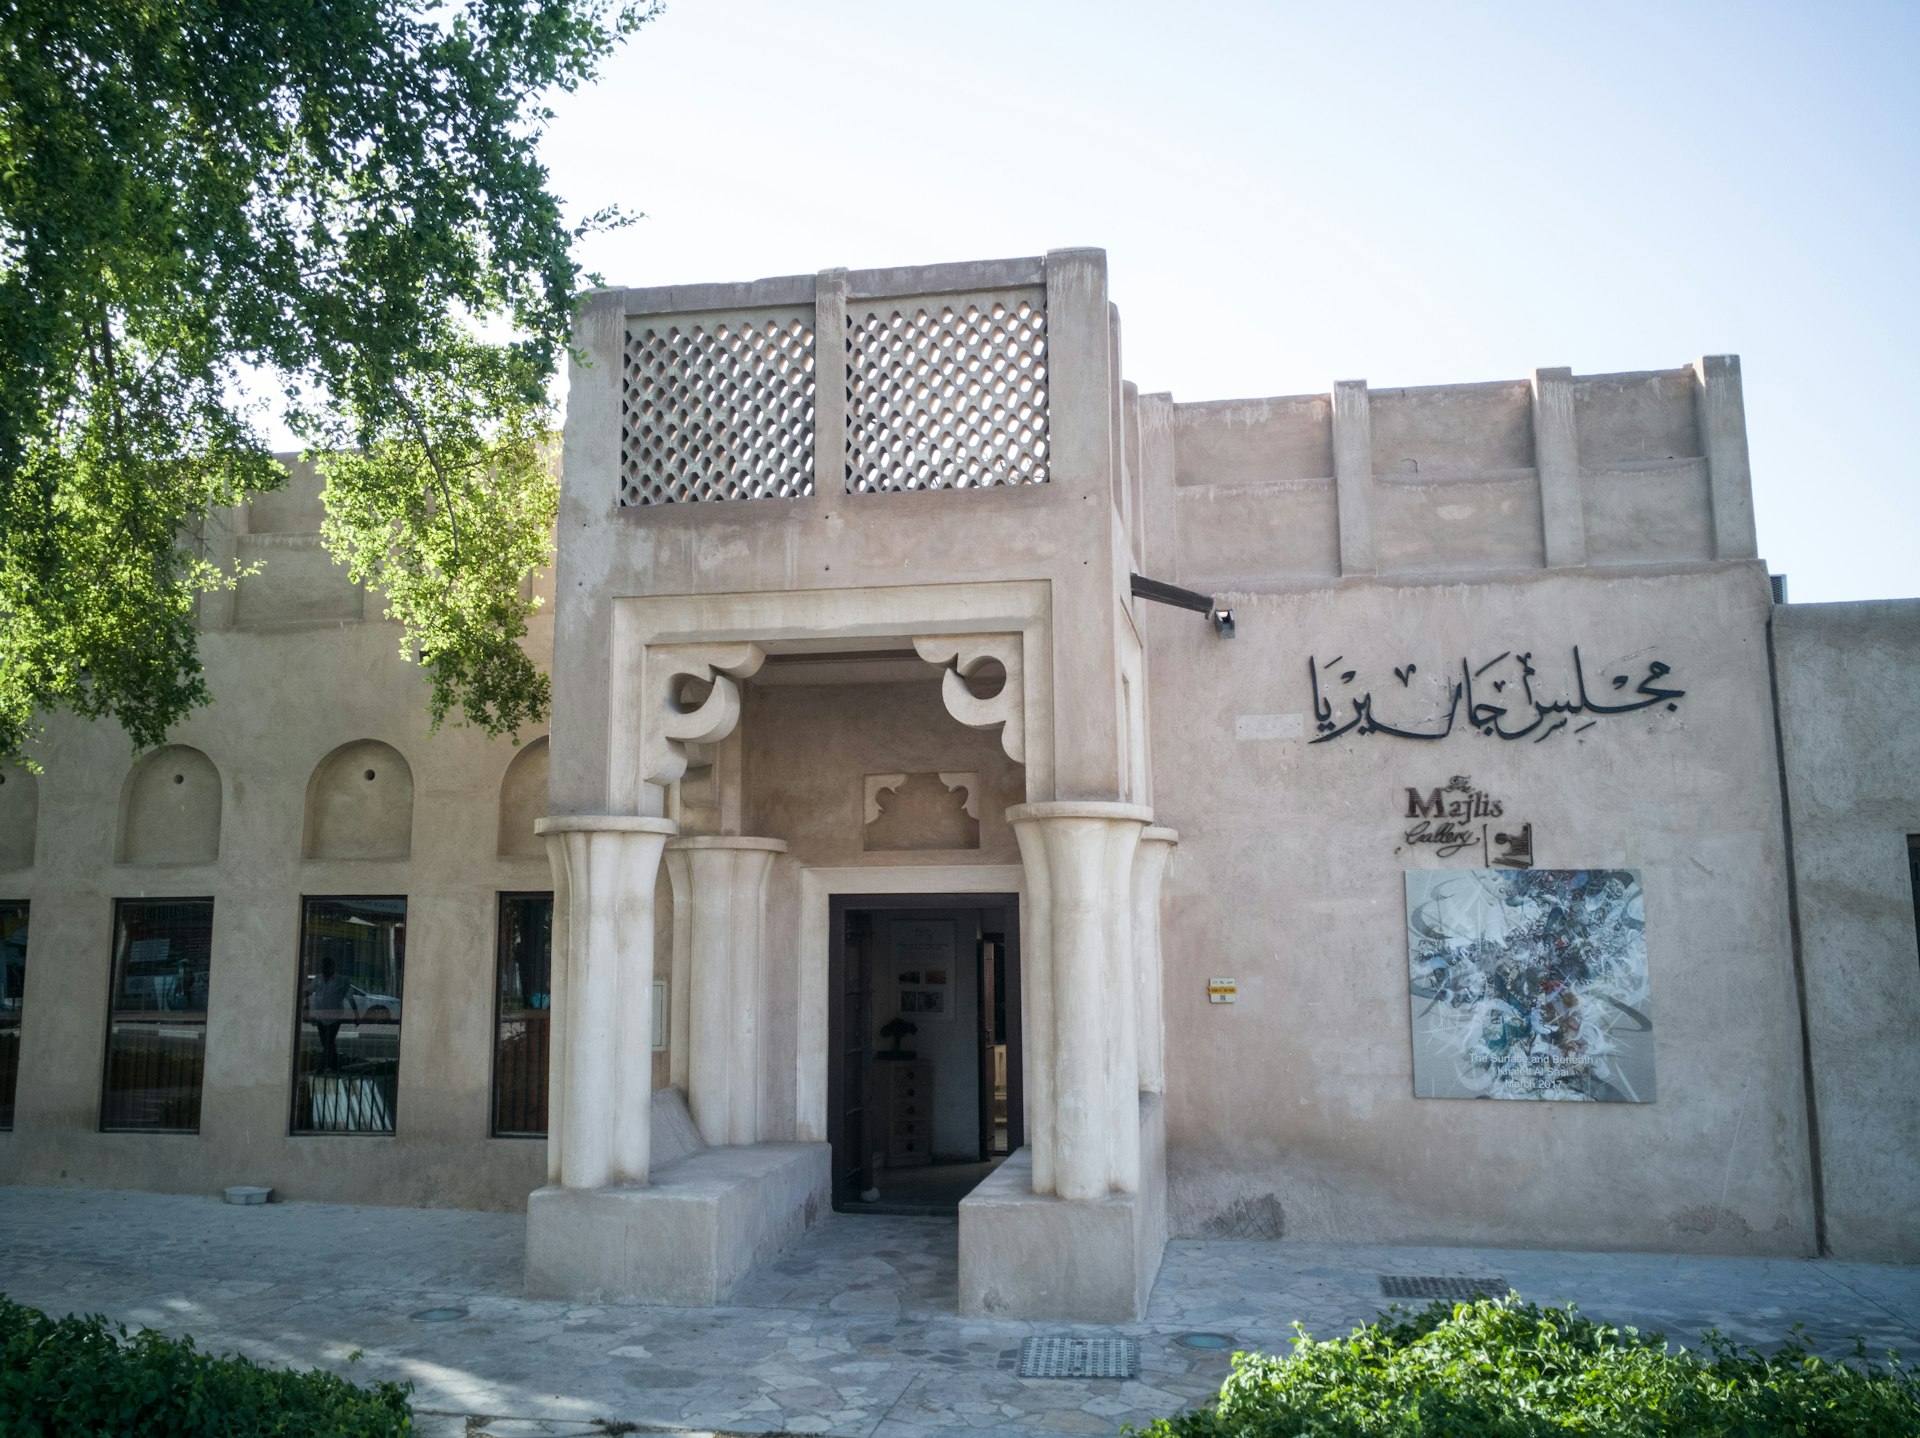 Exterior of Majlis Gallery in Dubai, United Arab Emirates